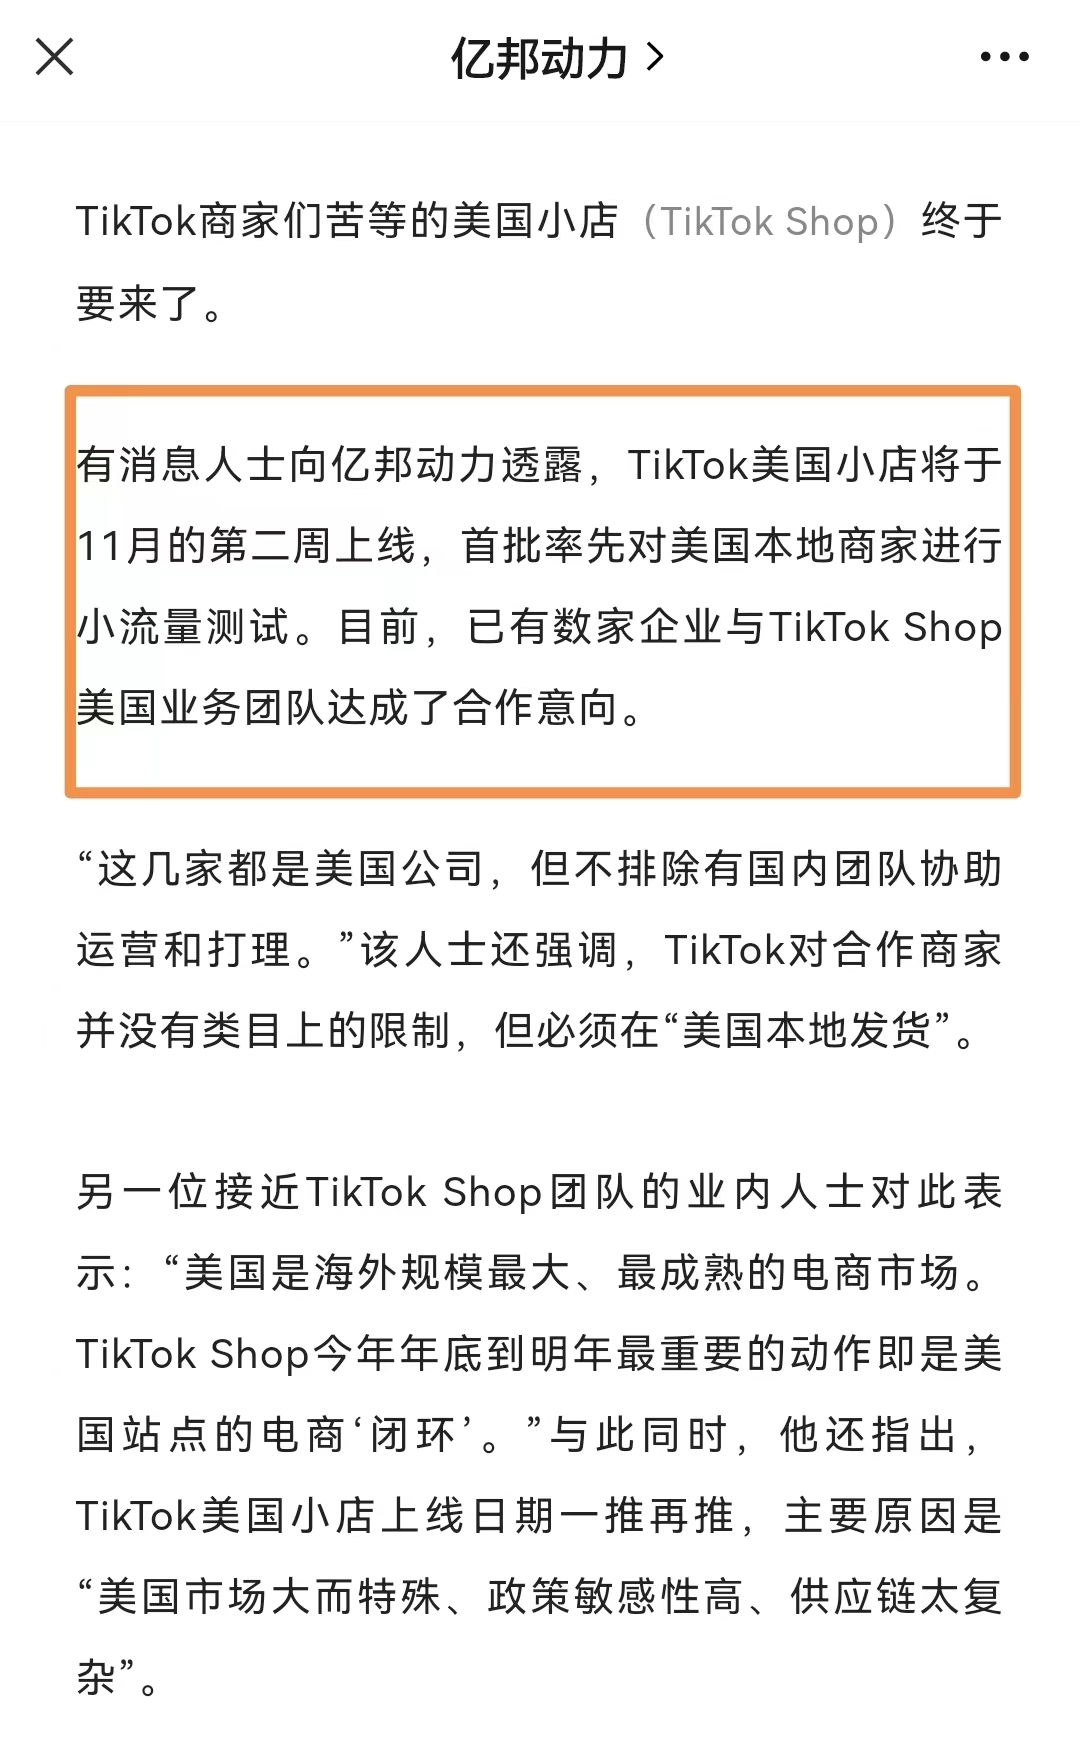 TikTok Shop将于11月第二周在美国上线